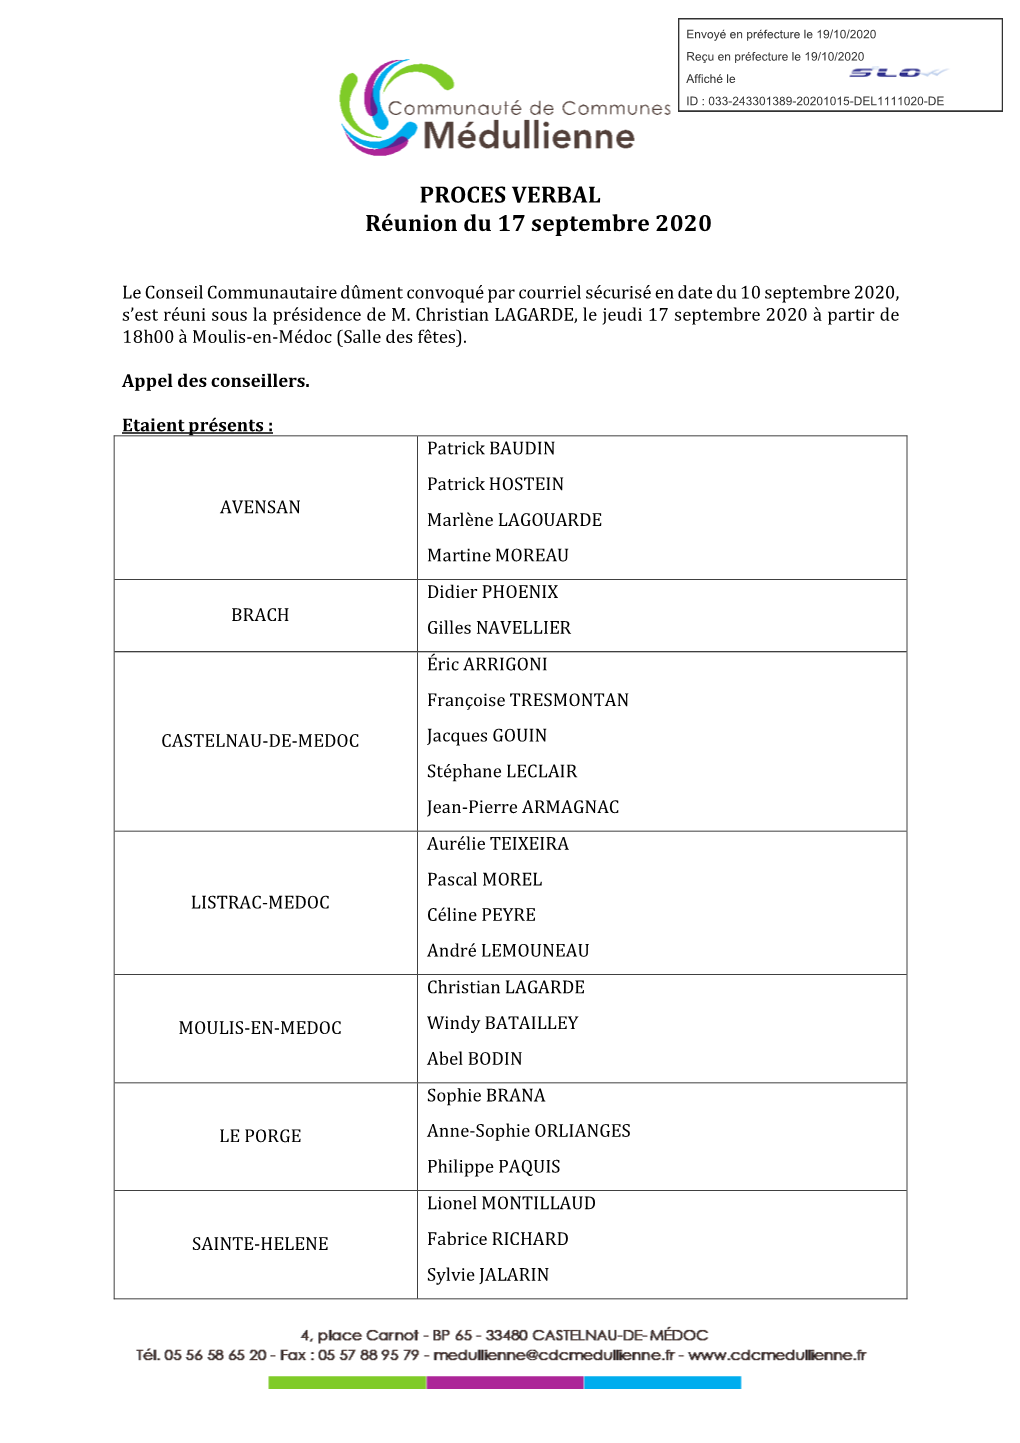 PROCES VERBAL Réunion Du 17 Septembre 2020